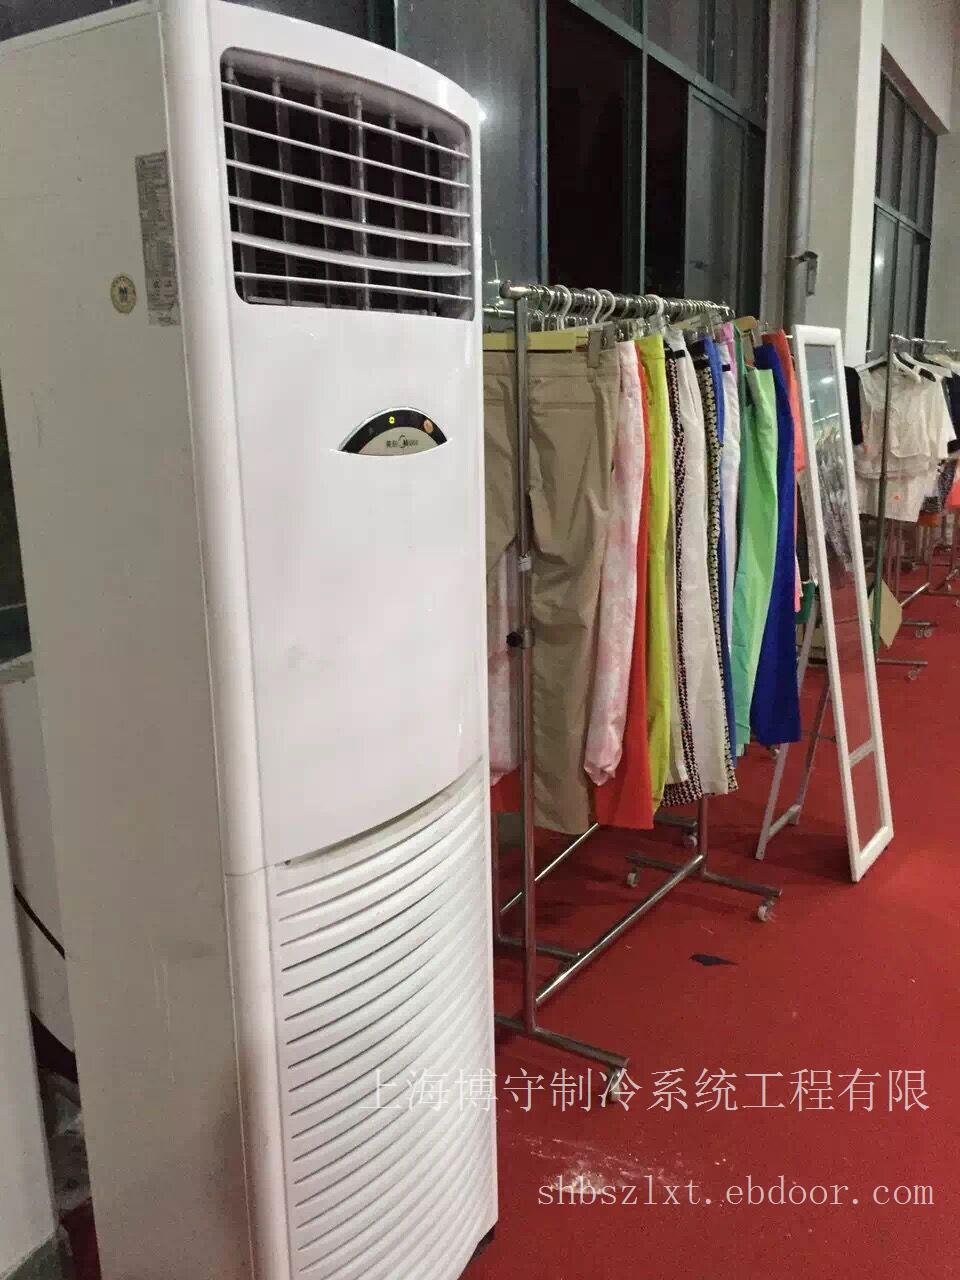 上海空调租赁|上海空调租赁价格